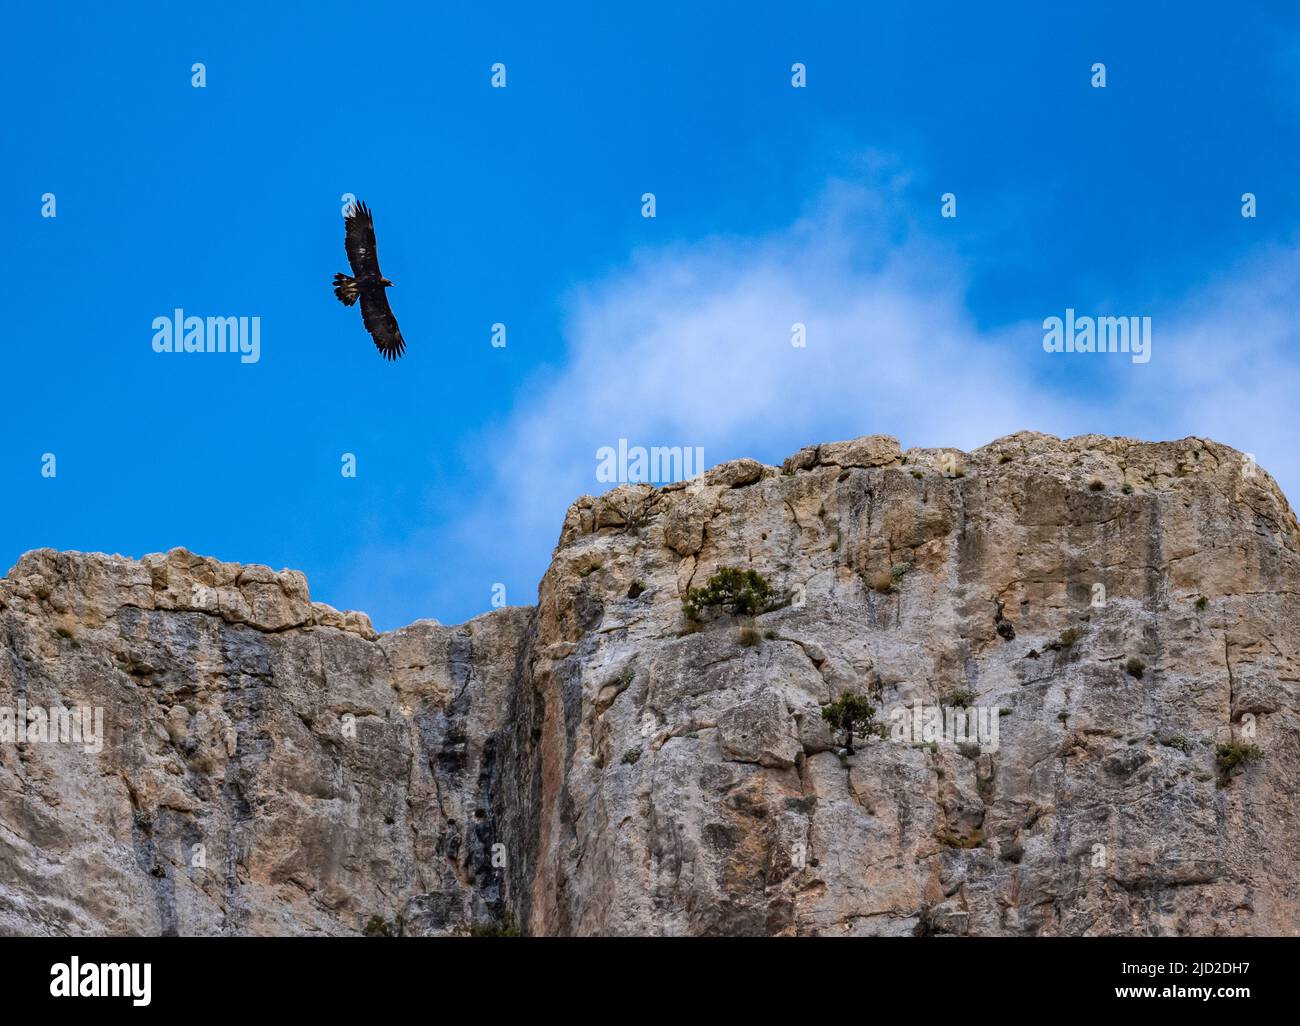 Ein Goldener Adler (Aquila chrysaetos), der über die felsigen Klippen des Taurusgebirges fliegt. Aladaglar Nationalpark, Niğde, Türkiye. Stockfoto